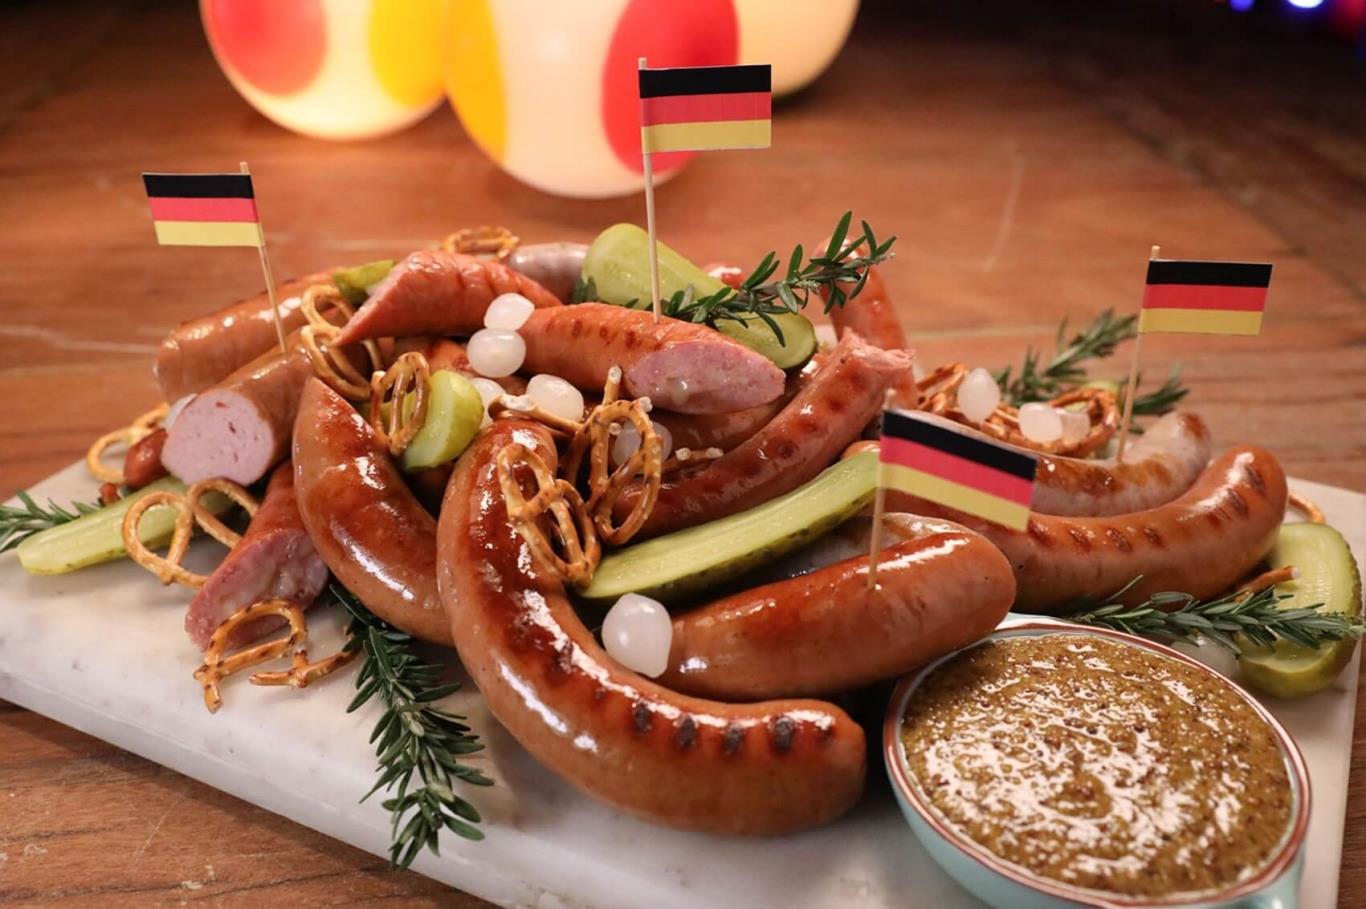 Xúc xích Đức là một trong những món ăn nổi tiếng nhất của Đức